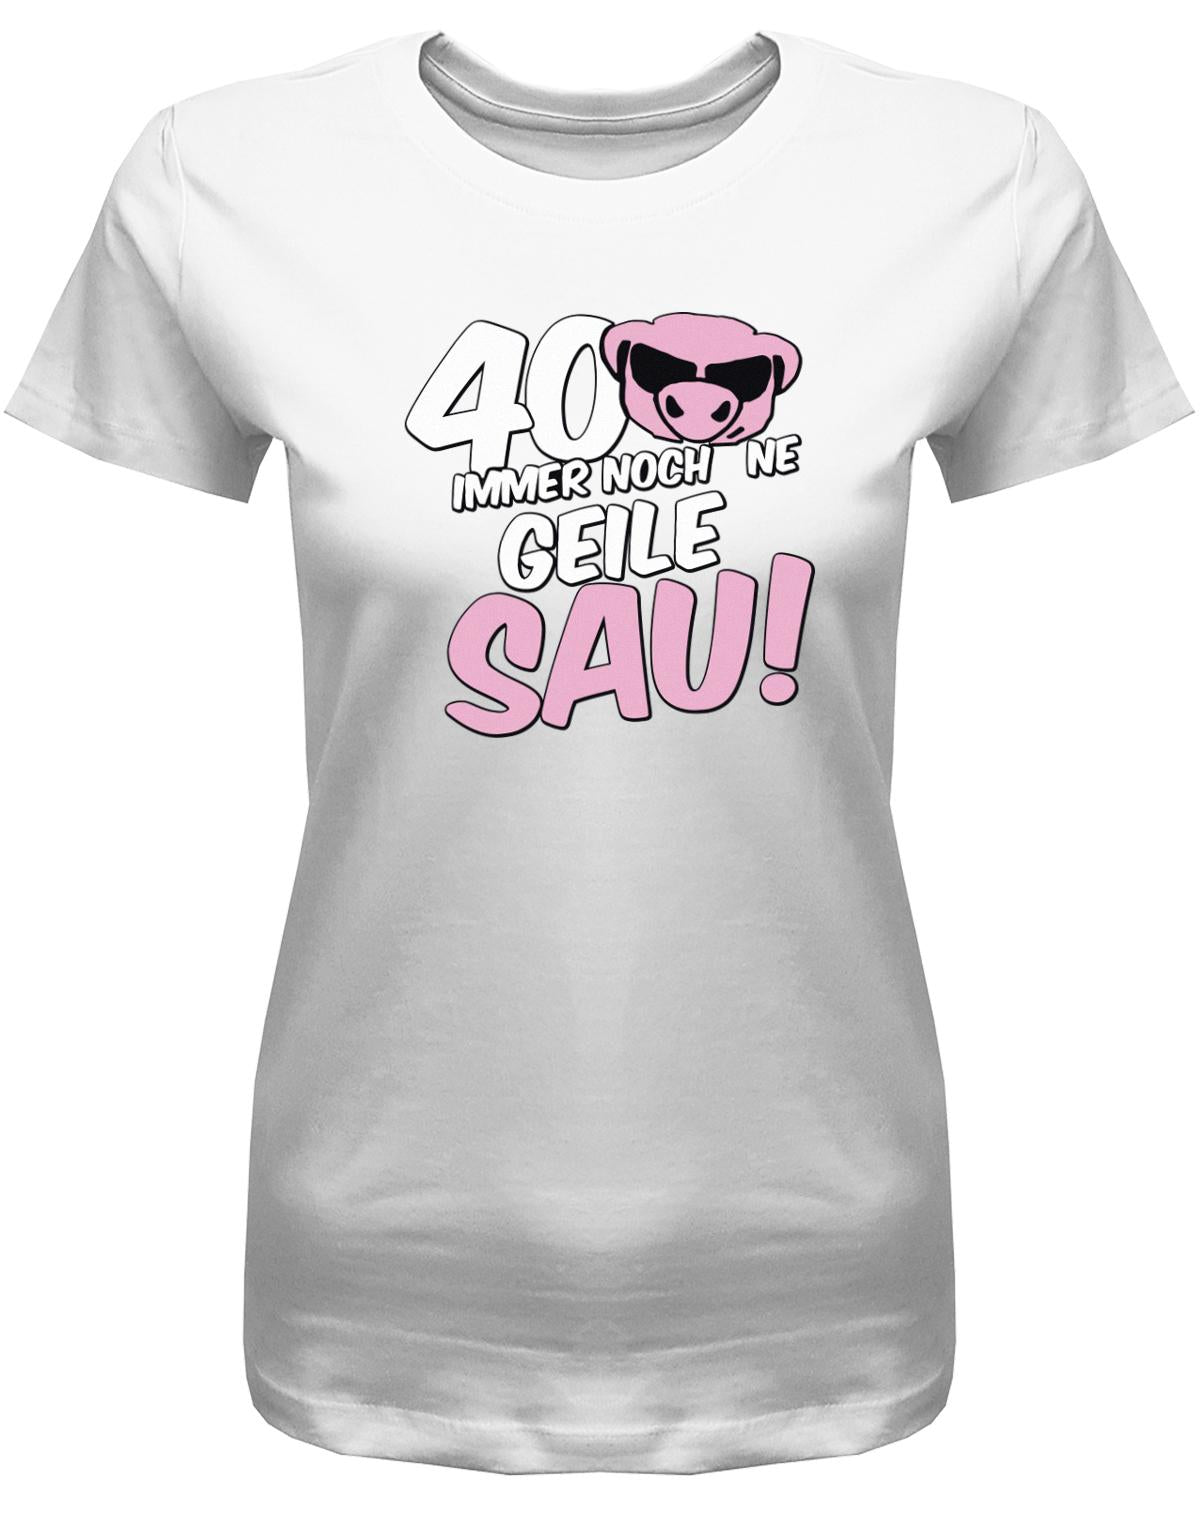 Lustiges T-Shirt zum 40 Geburtstag für die Frau Bedruckt mit 40 Immer noch 'ne geile Sau! Sau mit Sonnenbrille Weiss